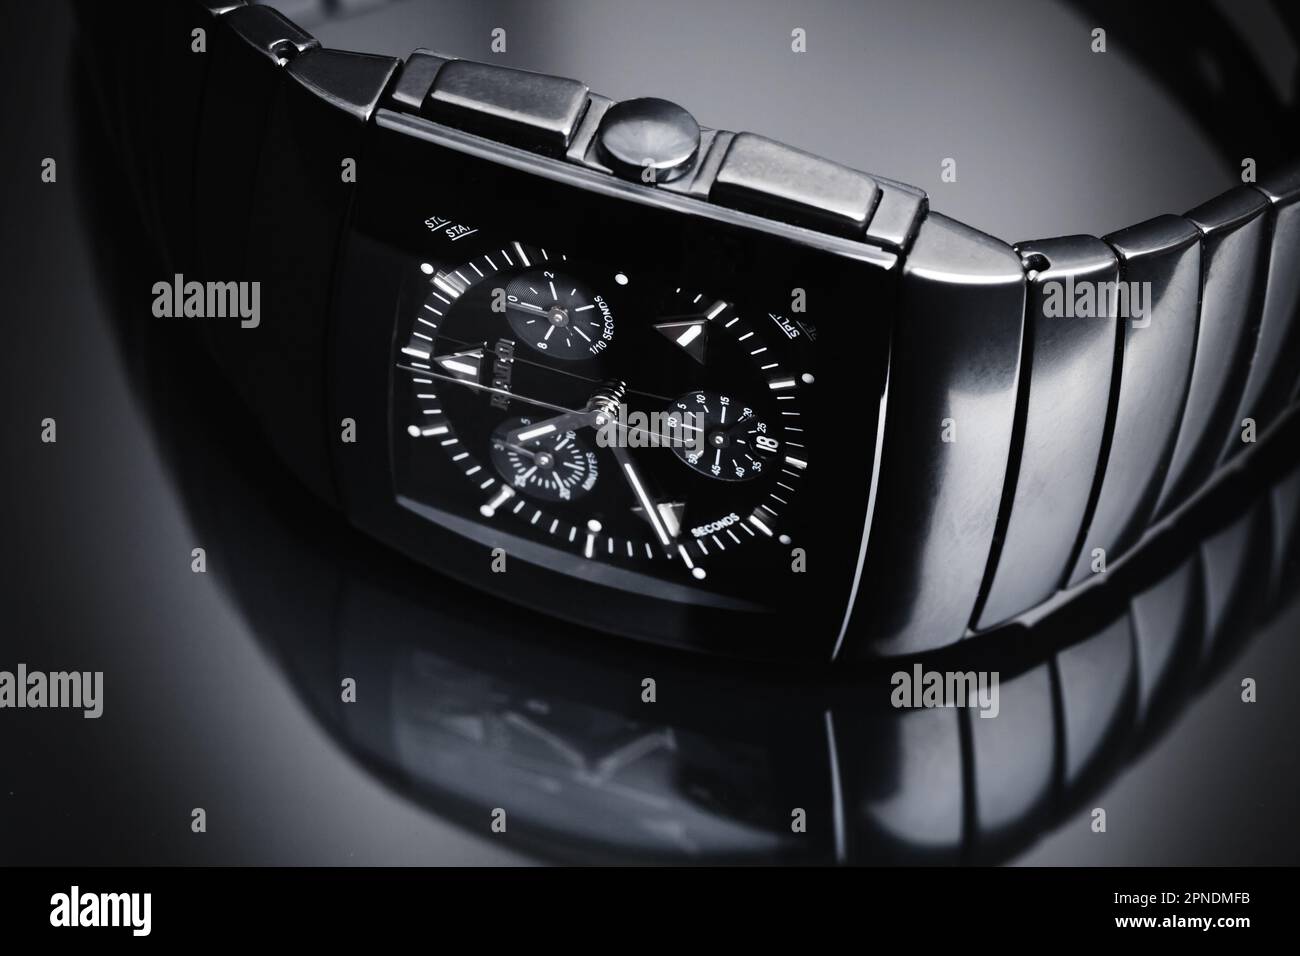 Lengnau, Suisse - 18 juin 2015: Rado Sintra Chrono, montre-bracelet suisse avec chronographe, gros plan studio photo sur fond noir brillant Banque D'Images